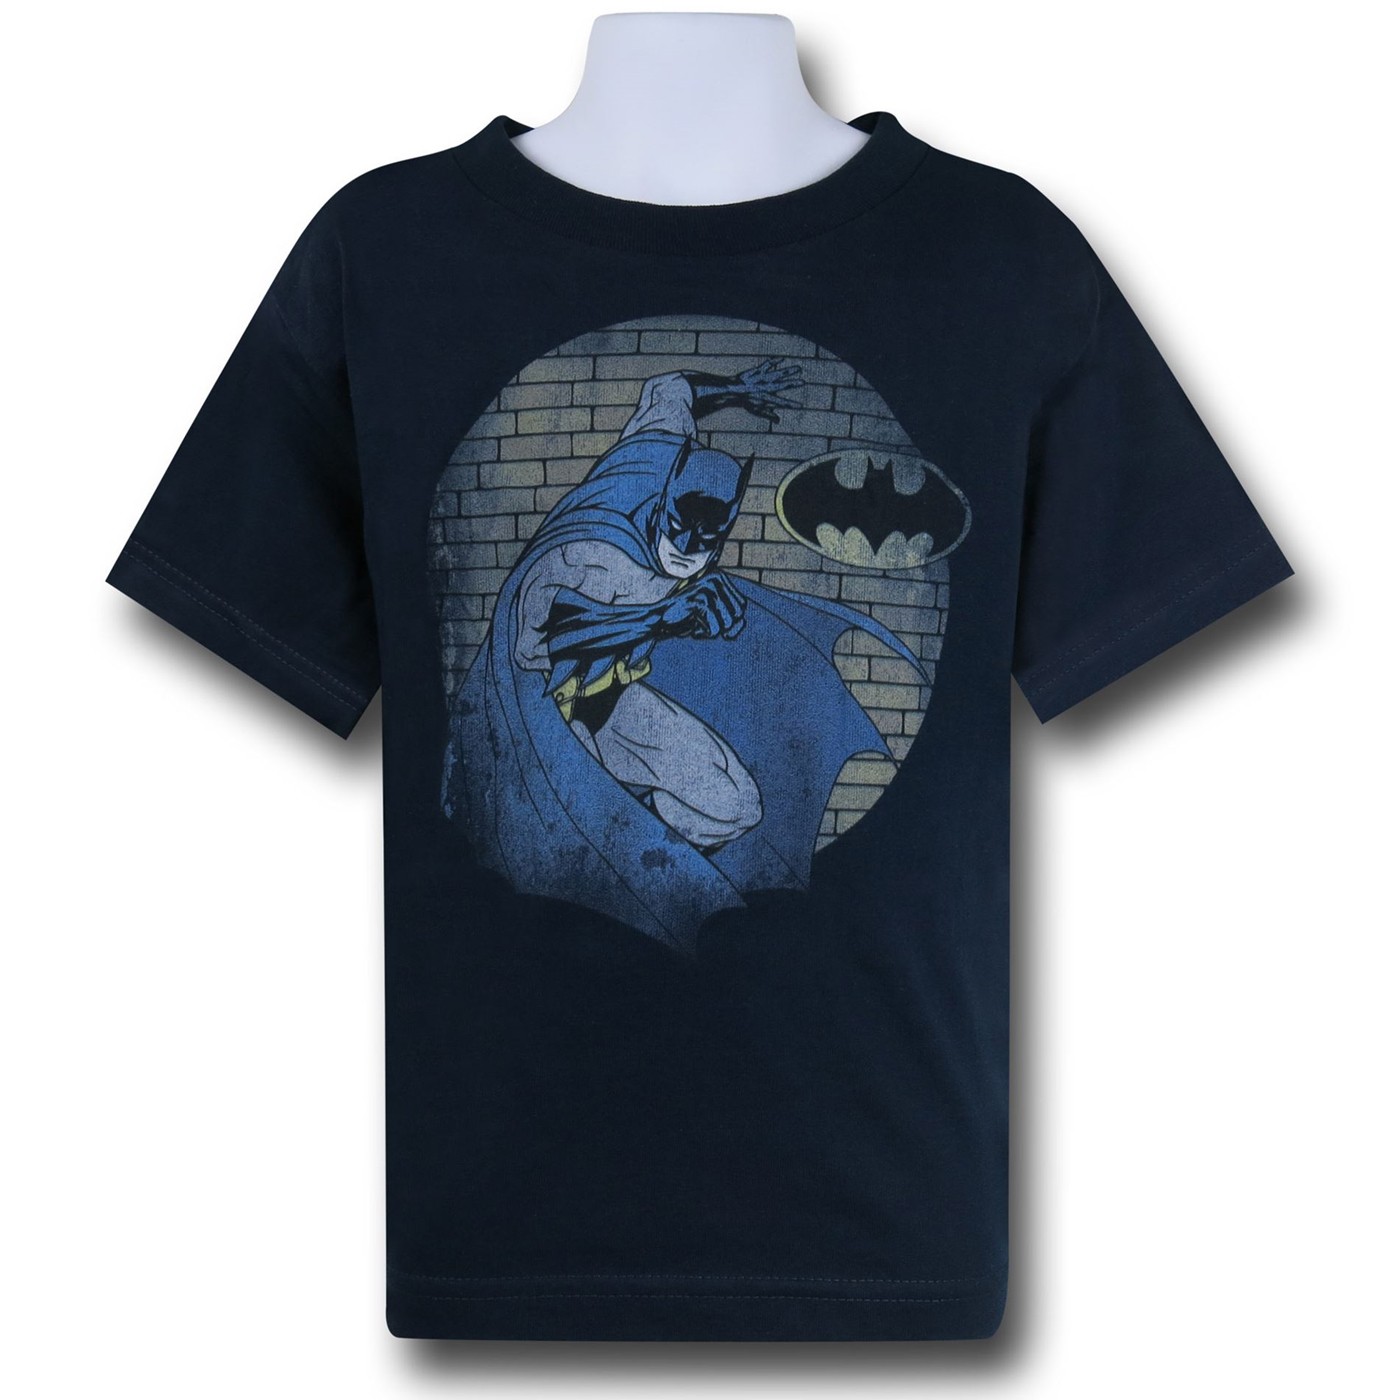 Batman Spot Light Kids T-Shirt